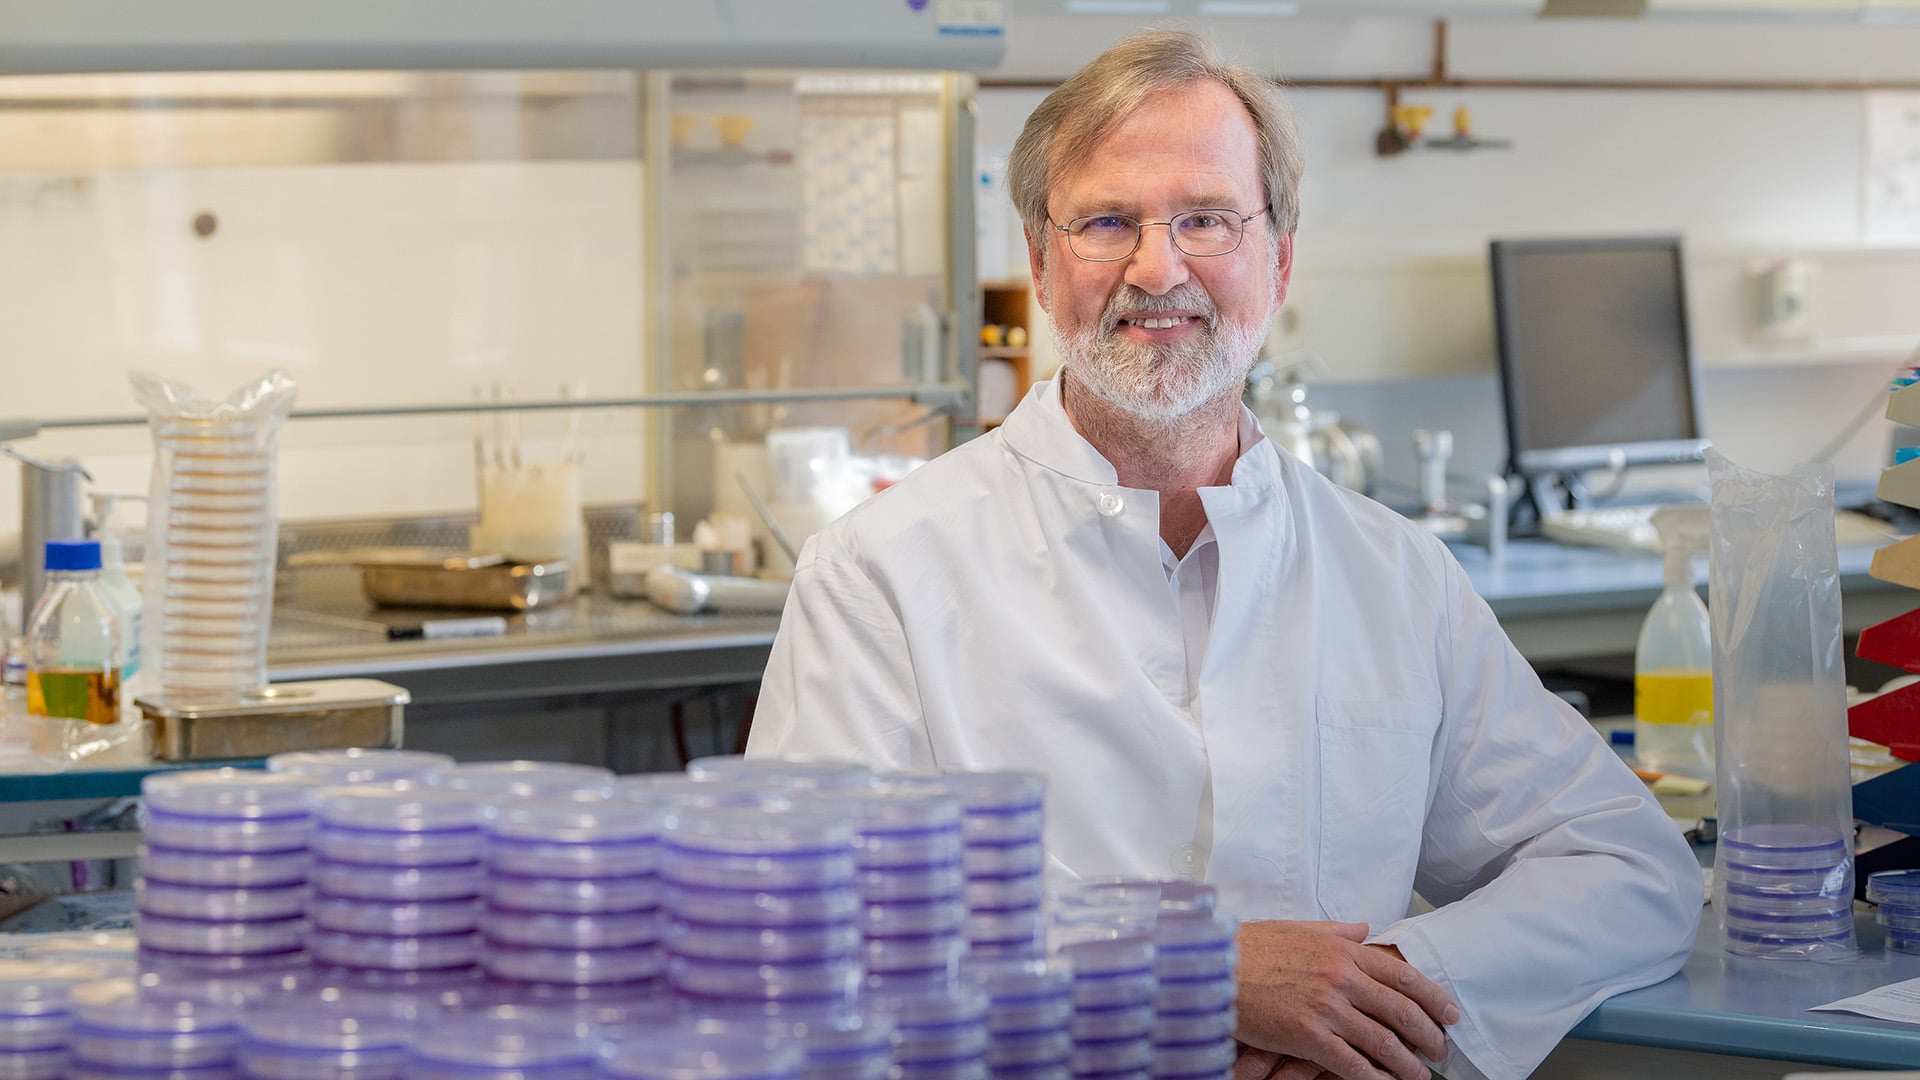 Siegfried Scherer, 65, ist seit 1991 Professor für Mikrobiologie an der Technischen Universität München. Lesen Sie hier ein ausführliches Interview mit dem gläubigen Wissenschaftler.